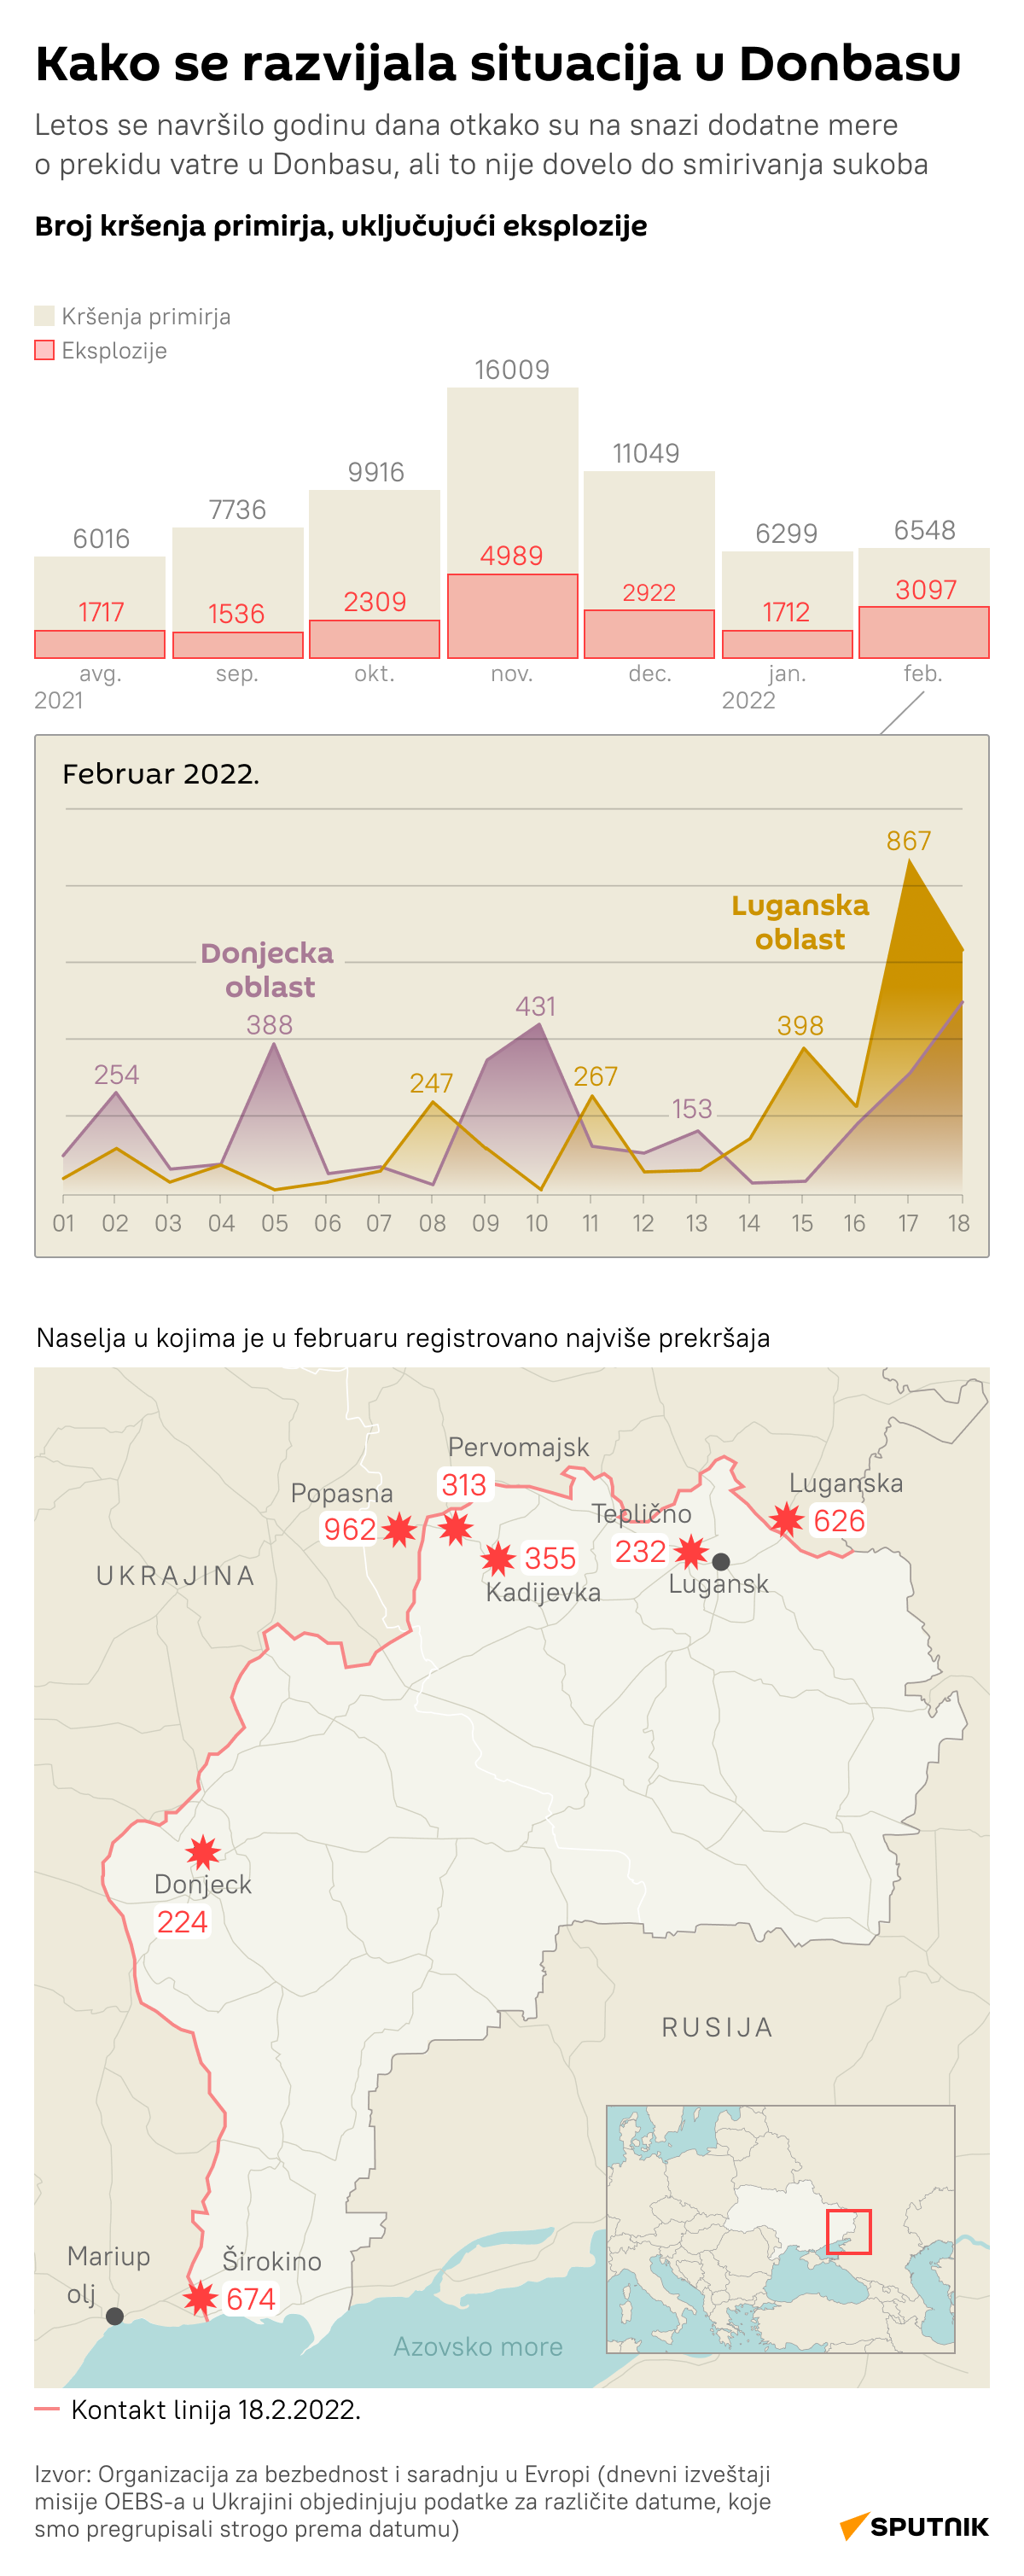 Situacija u Donbasu LAT DESK - Sputnik Srbija